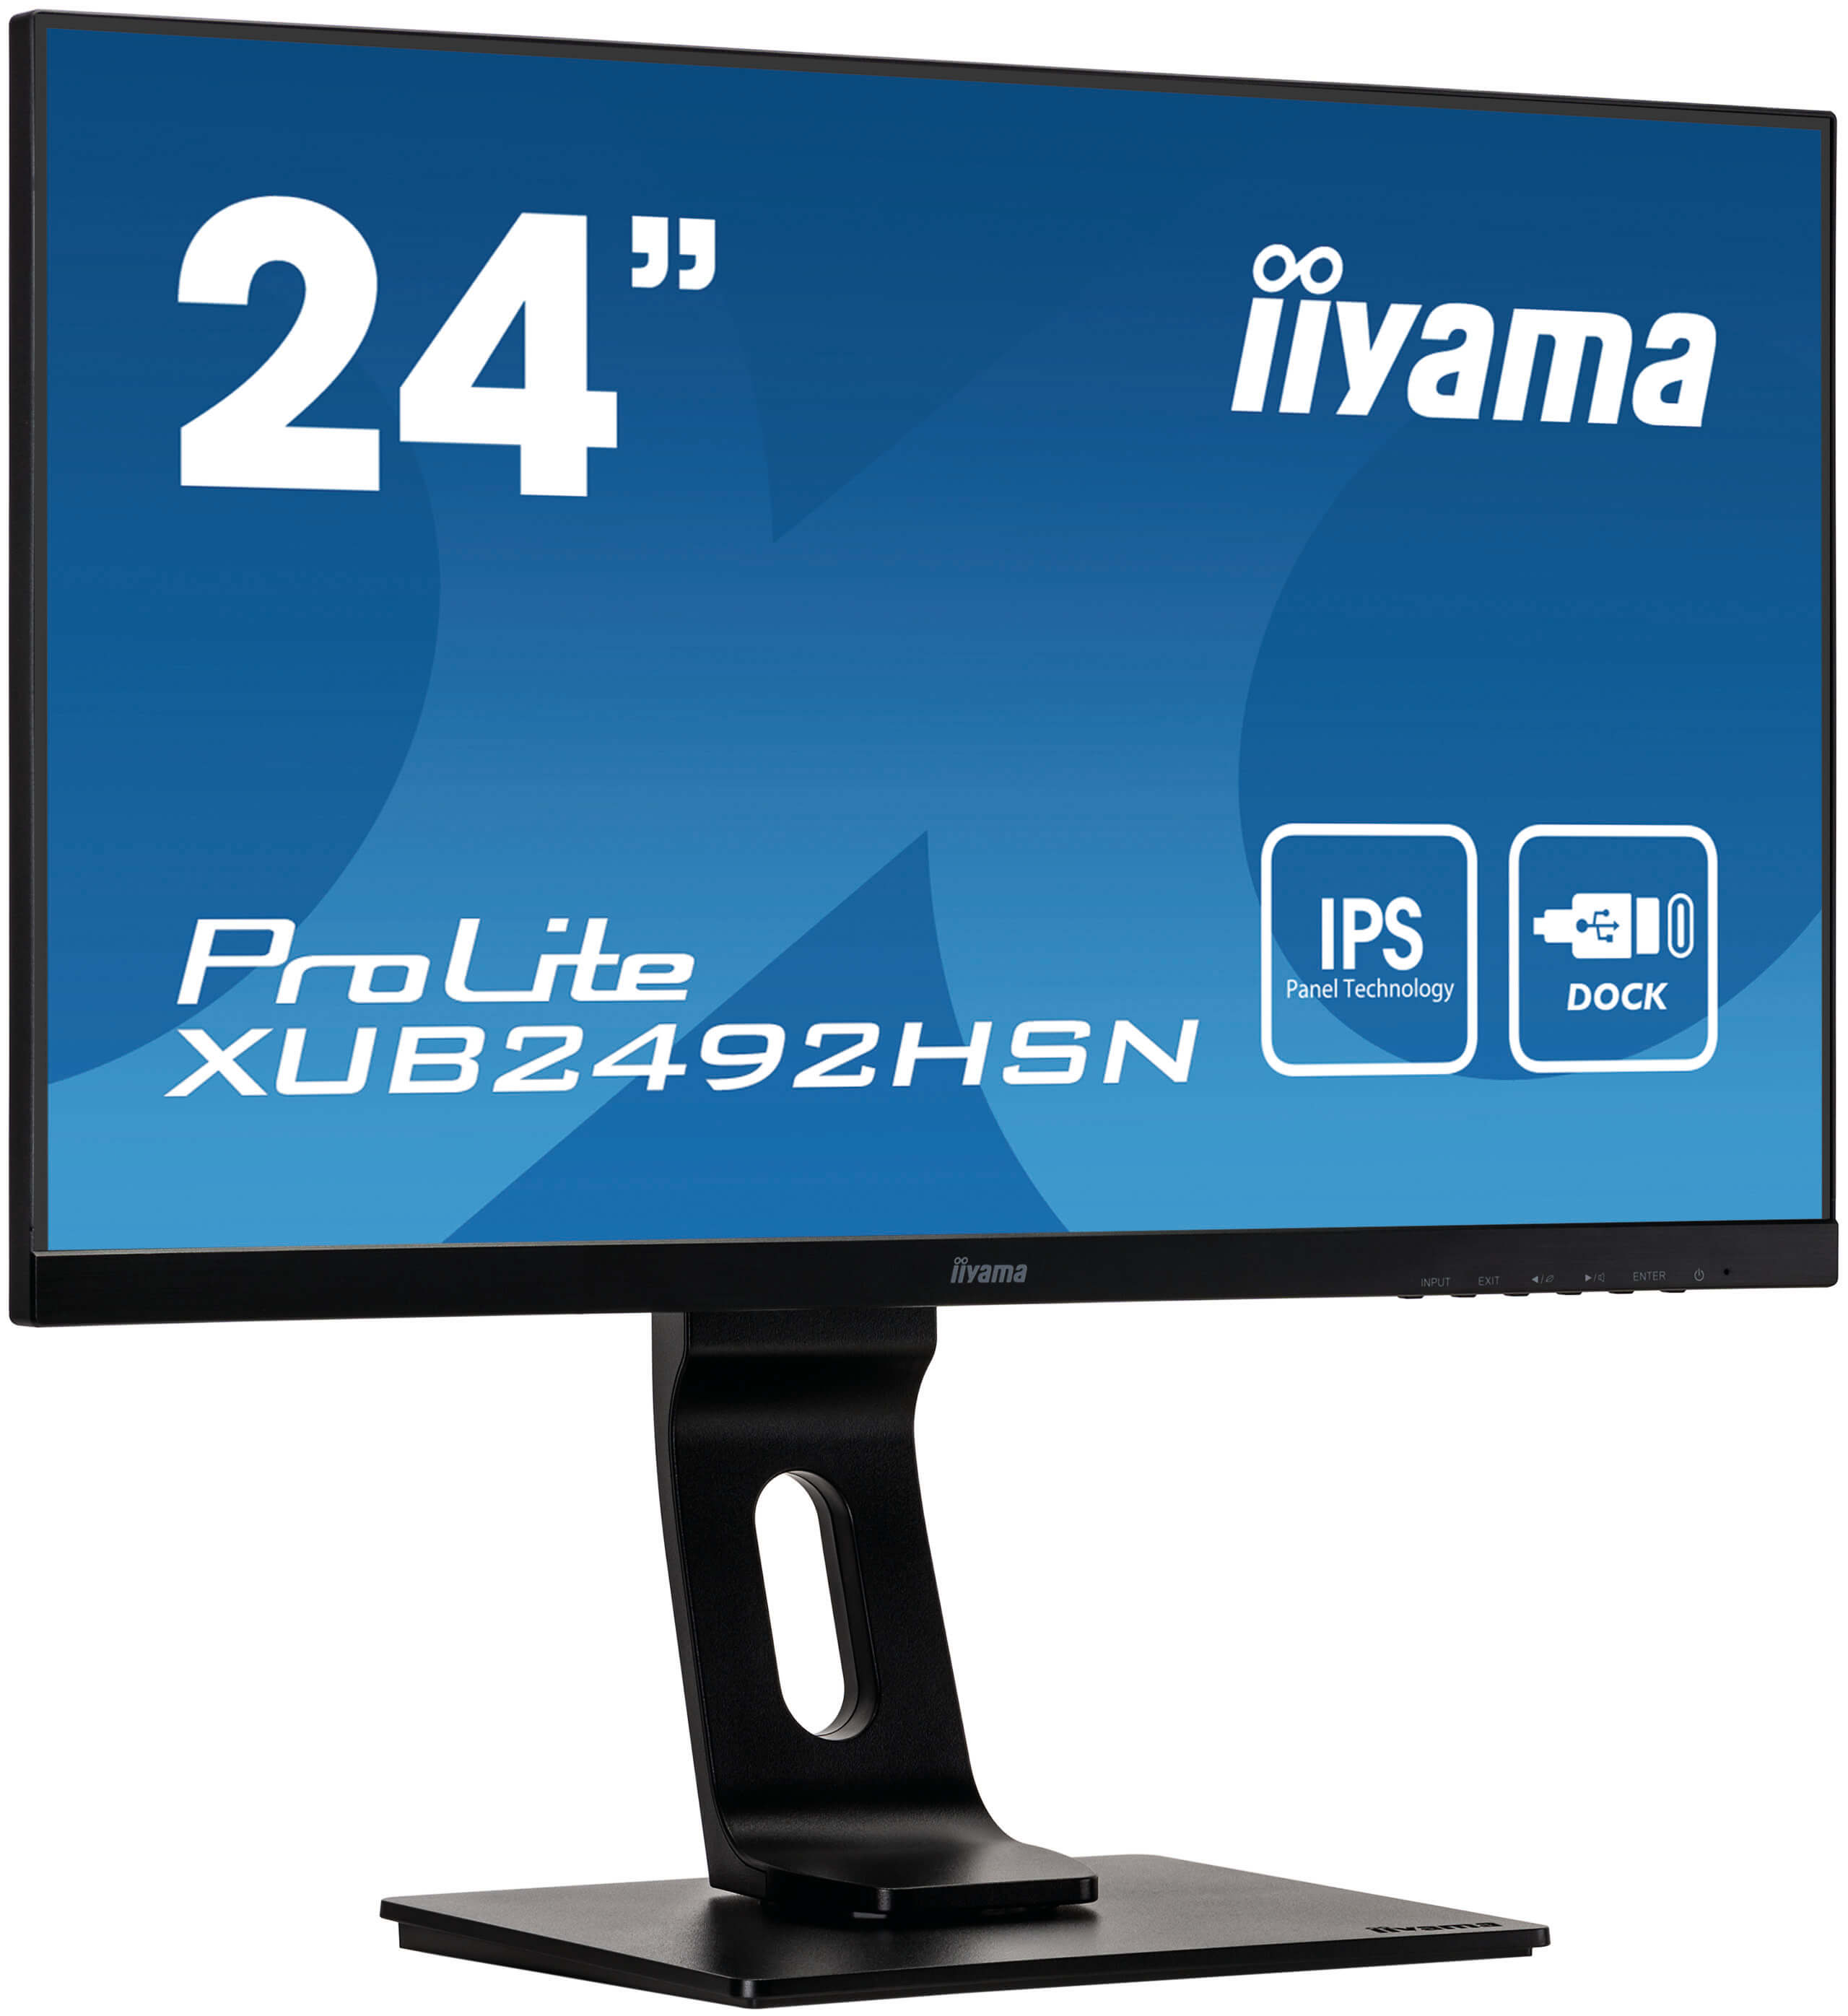 Iiyama ProLite XUB2492HSN-B1 | 23,8" (60,5cm) | Monitor mit IPS-Panel Technologie und USB-C-Anschluss